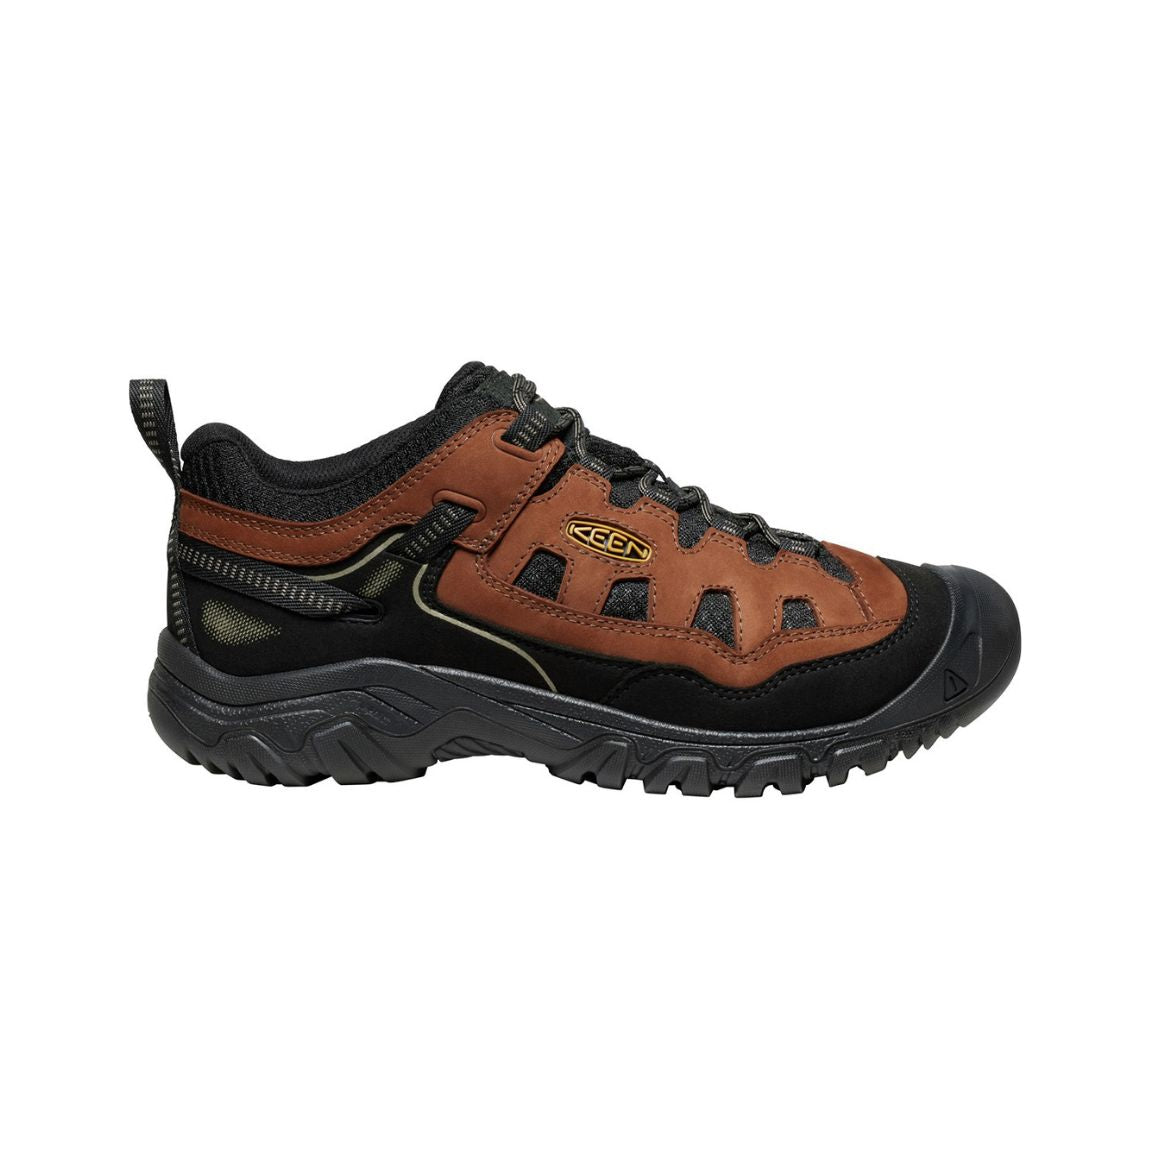 Chaussures de randonnée ventilées Keen Targhee IV - Hommes